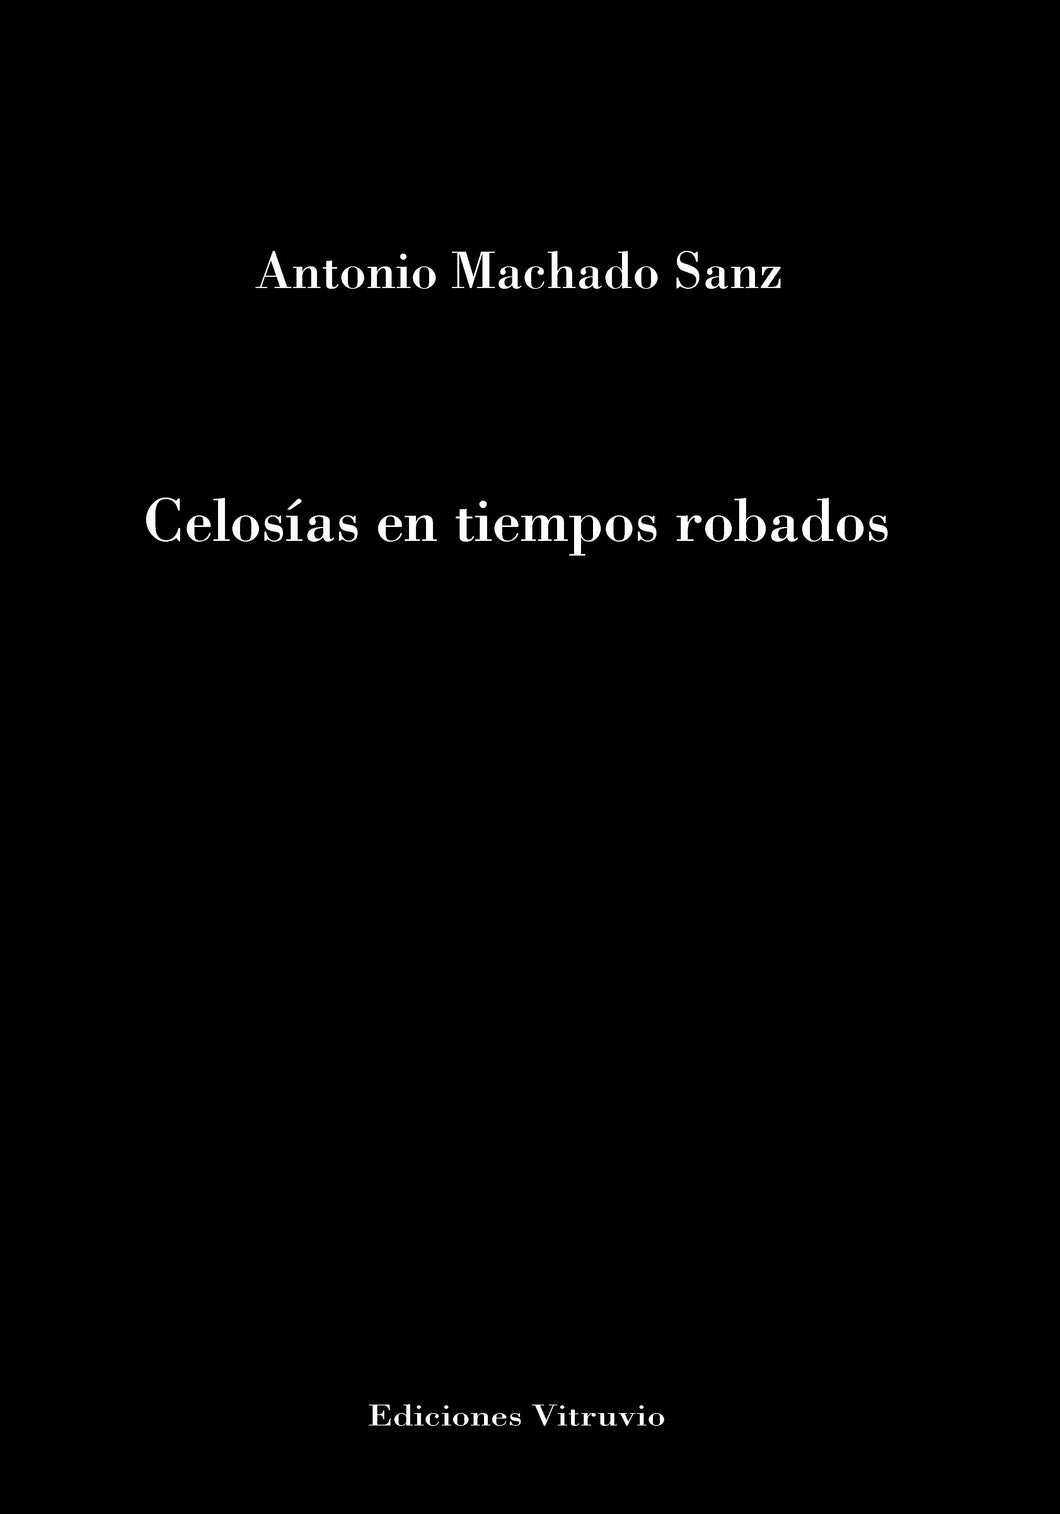 Celosías en tiempos robados, de Antonio Machado Sanz